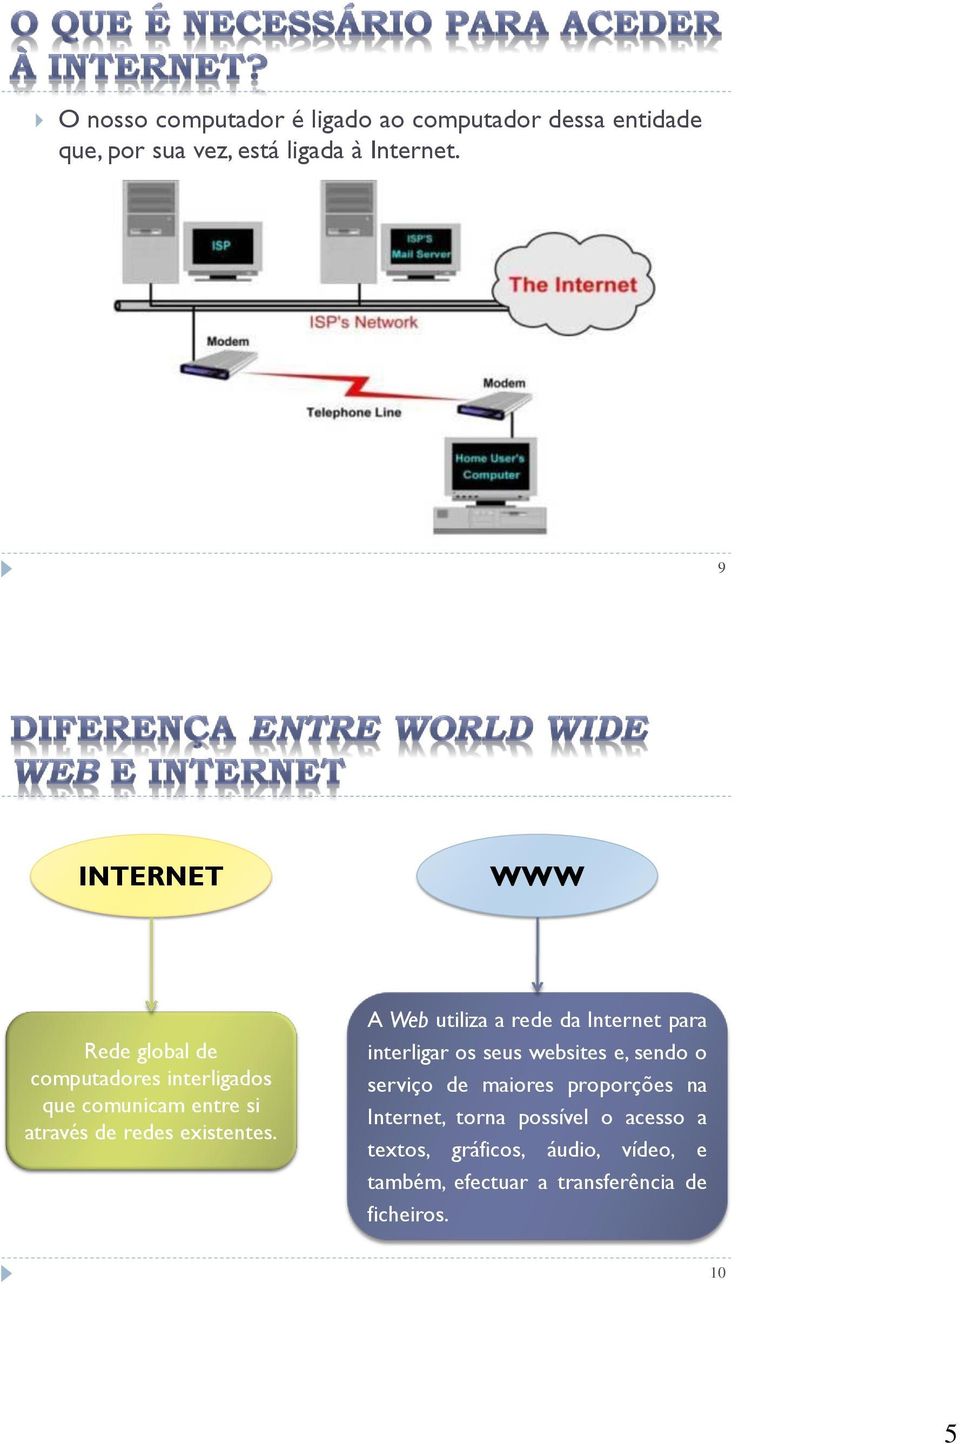 A Web utiliza a rede da Internet para interligar os seus websites e, sendo o serviço de maiores proporções na